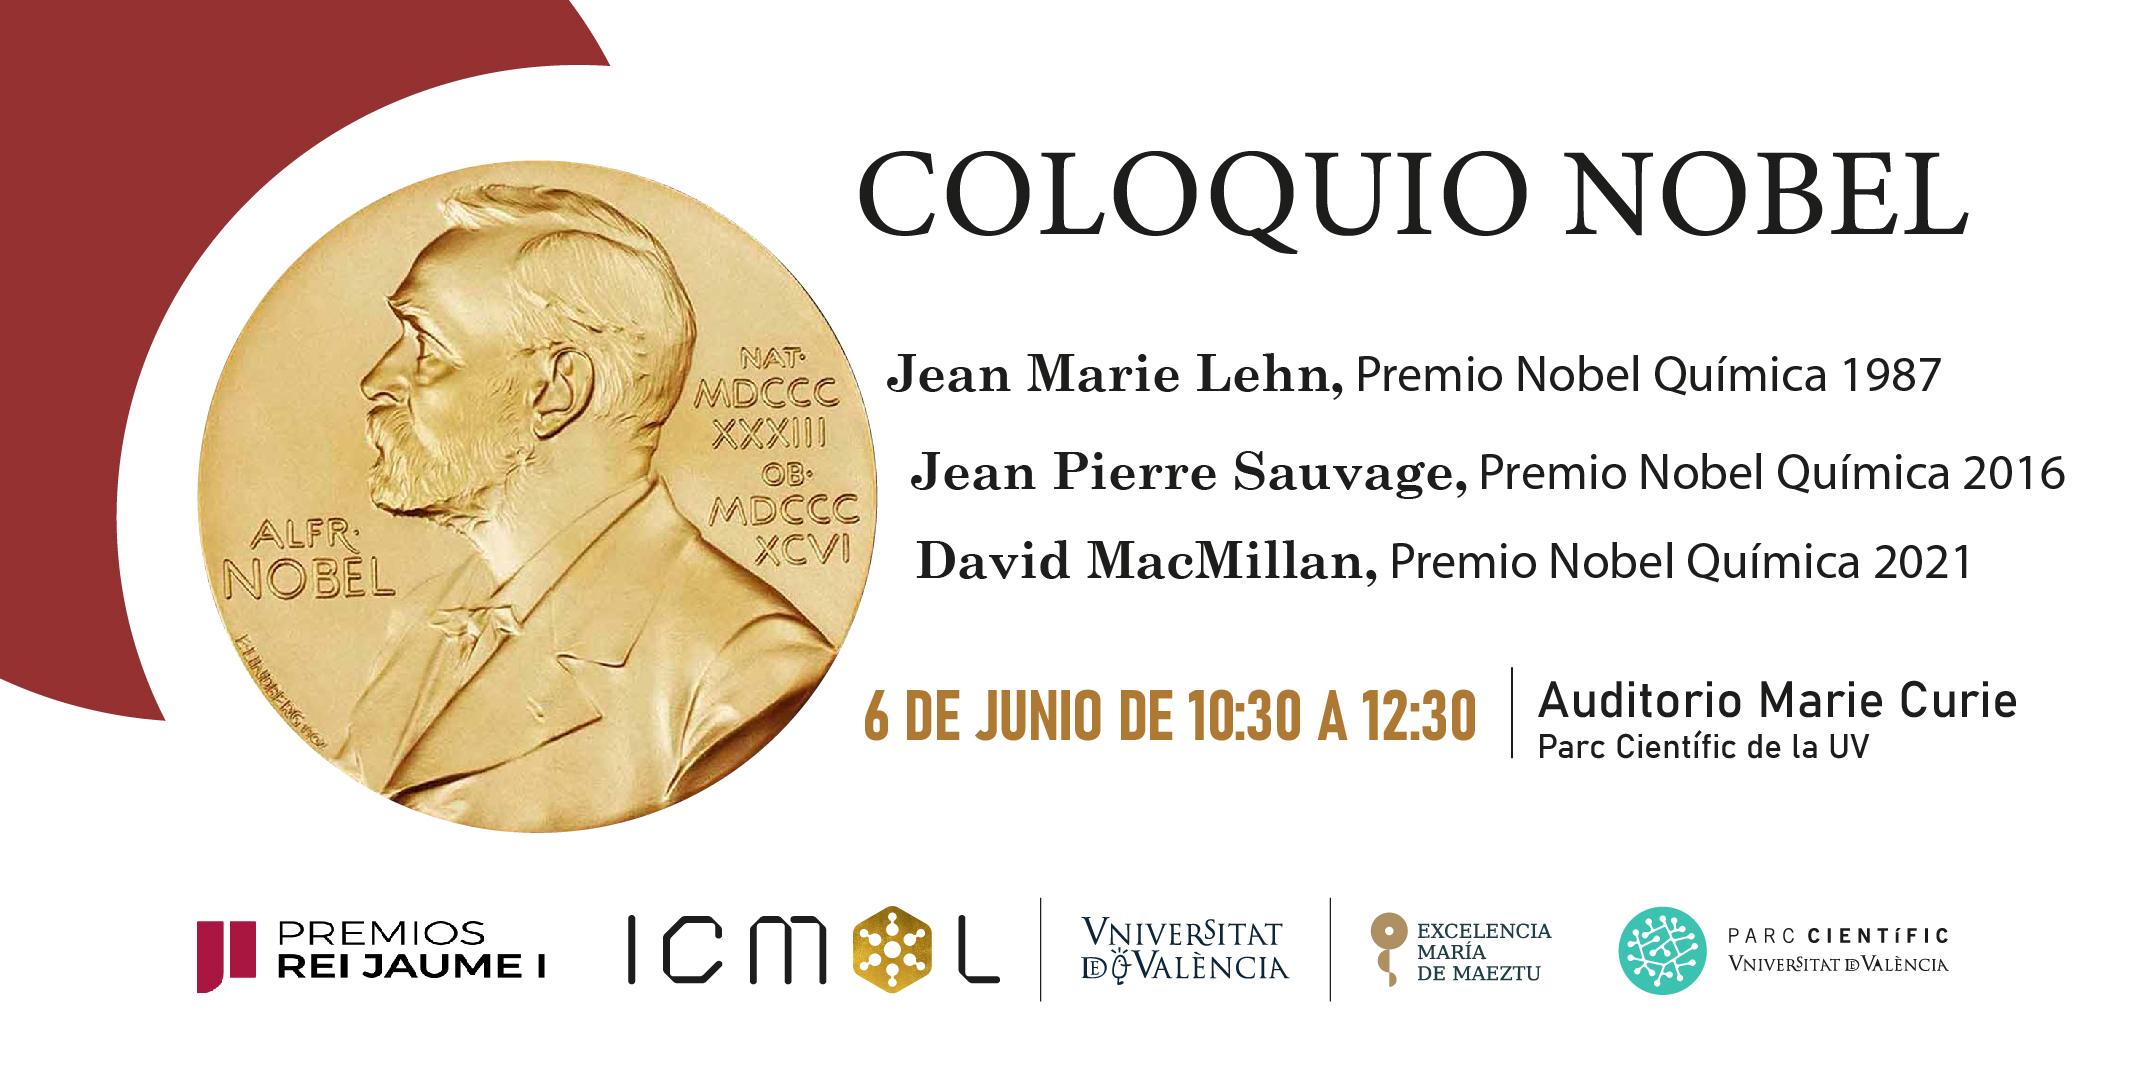 Premios Jaume I, ICMol, FPCUV | Coloquio Nobel 